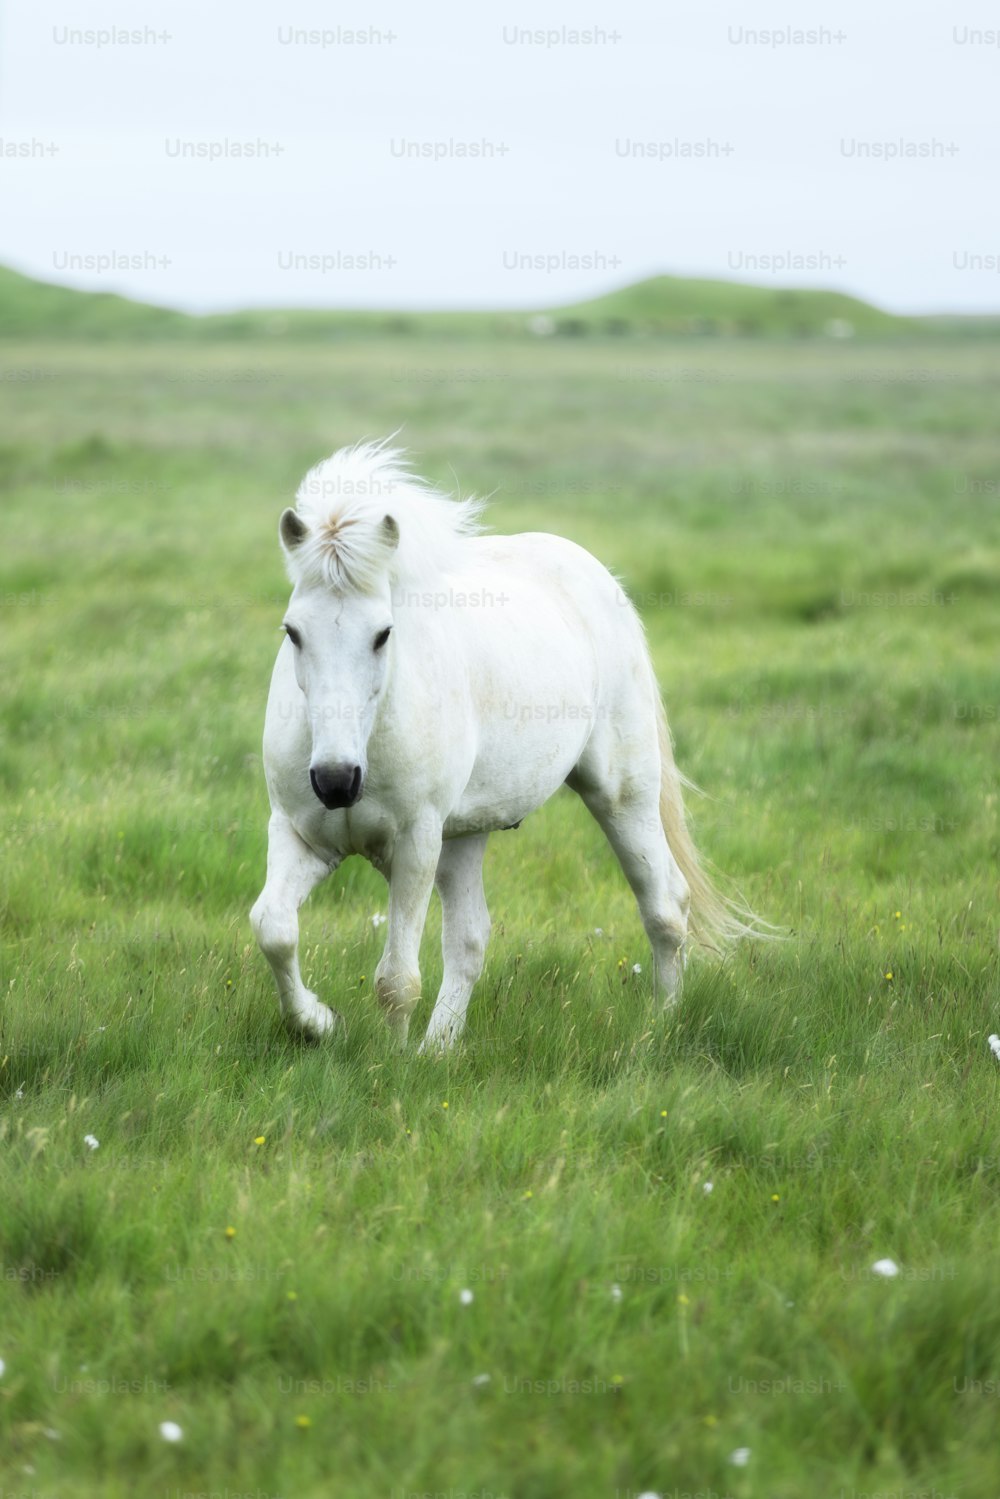 흰 말 한 마리가 풀밭에 서 있다